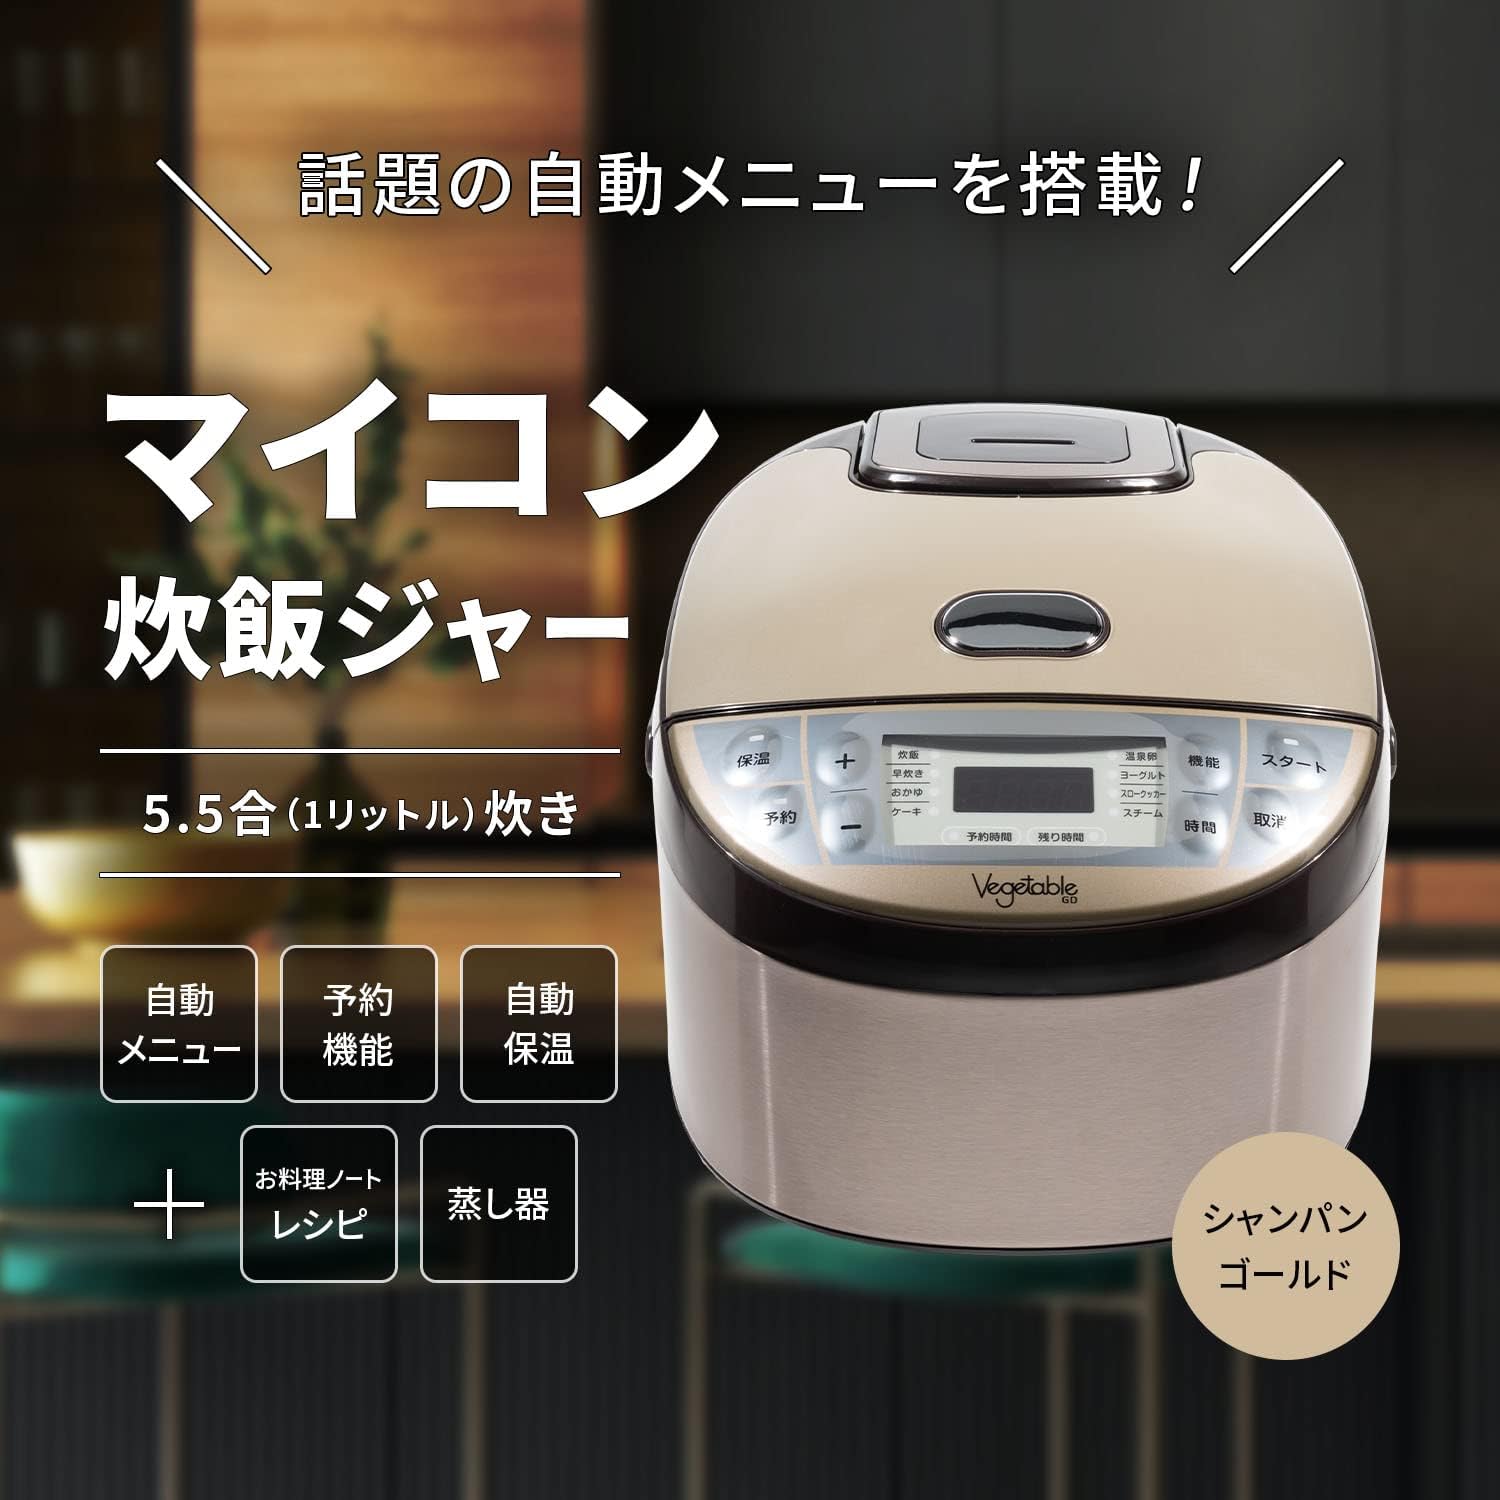 マイコン炊飯器5.5合炊き - 炊飯器・餅つき機